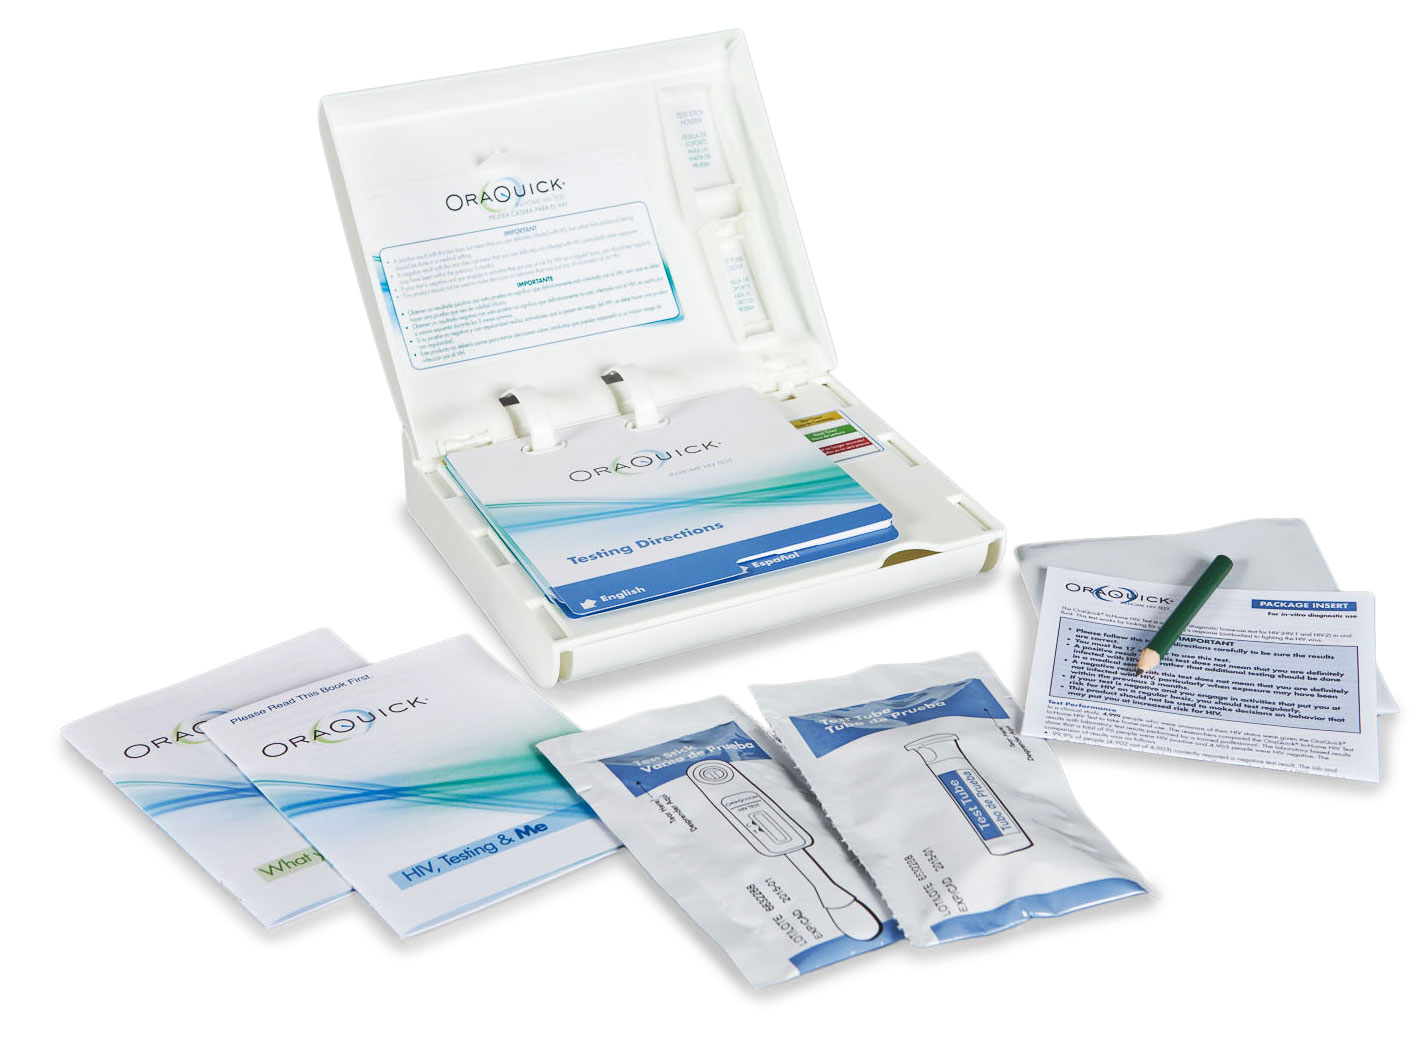 HIV Self-Test Kit